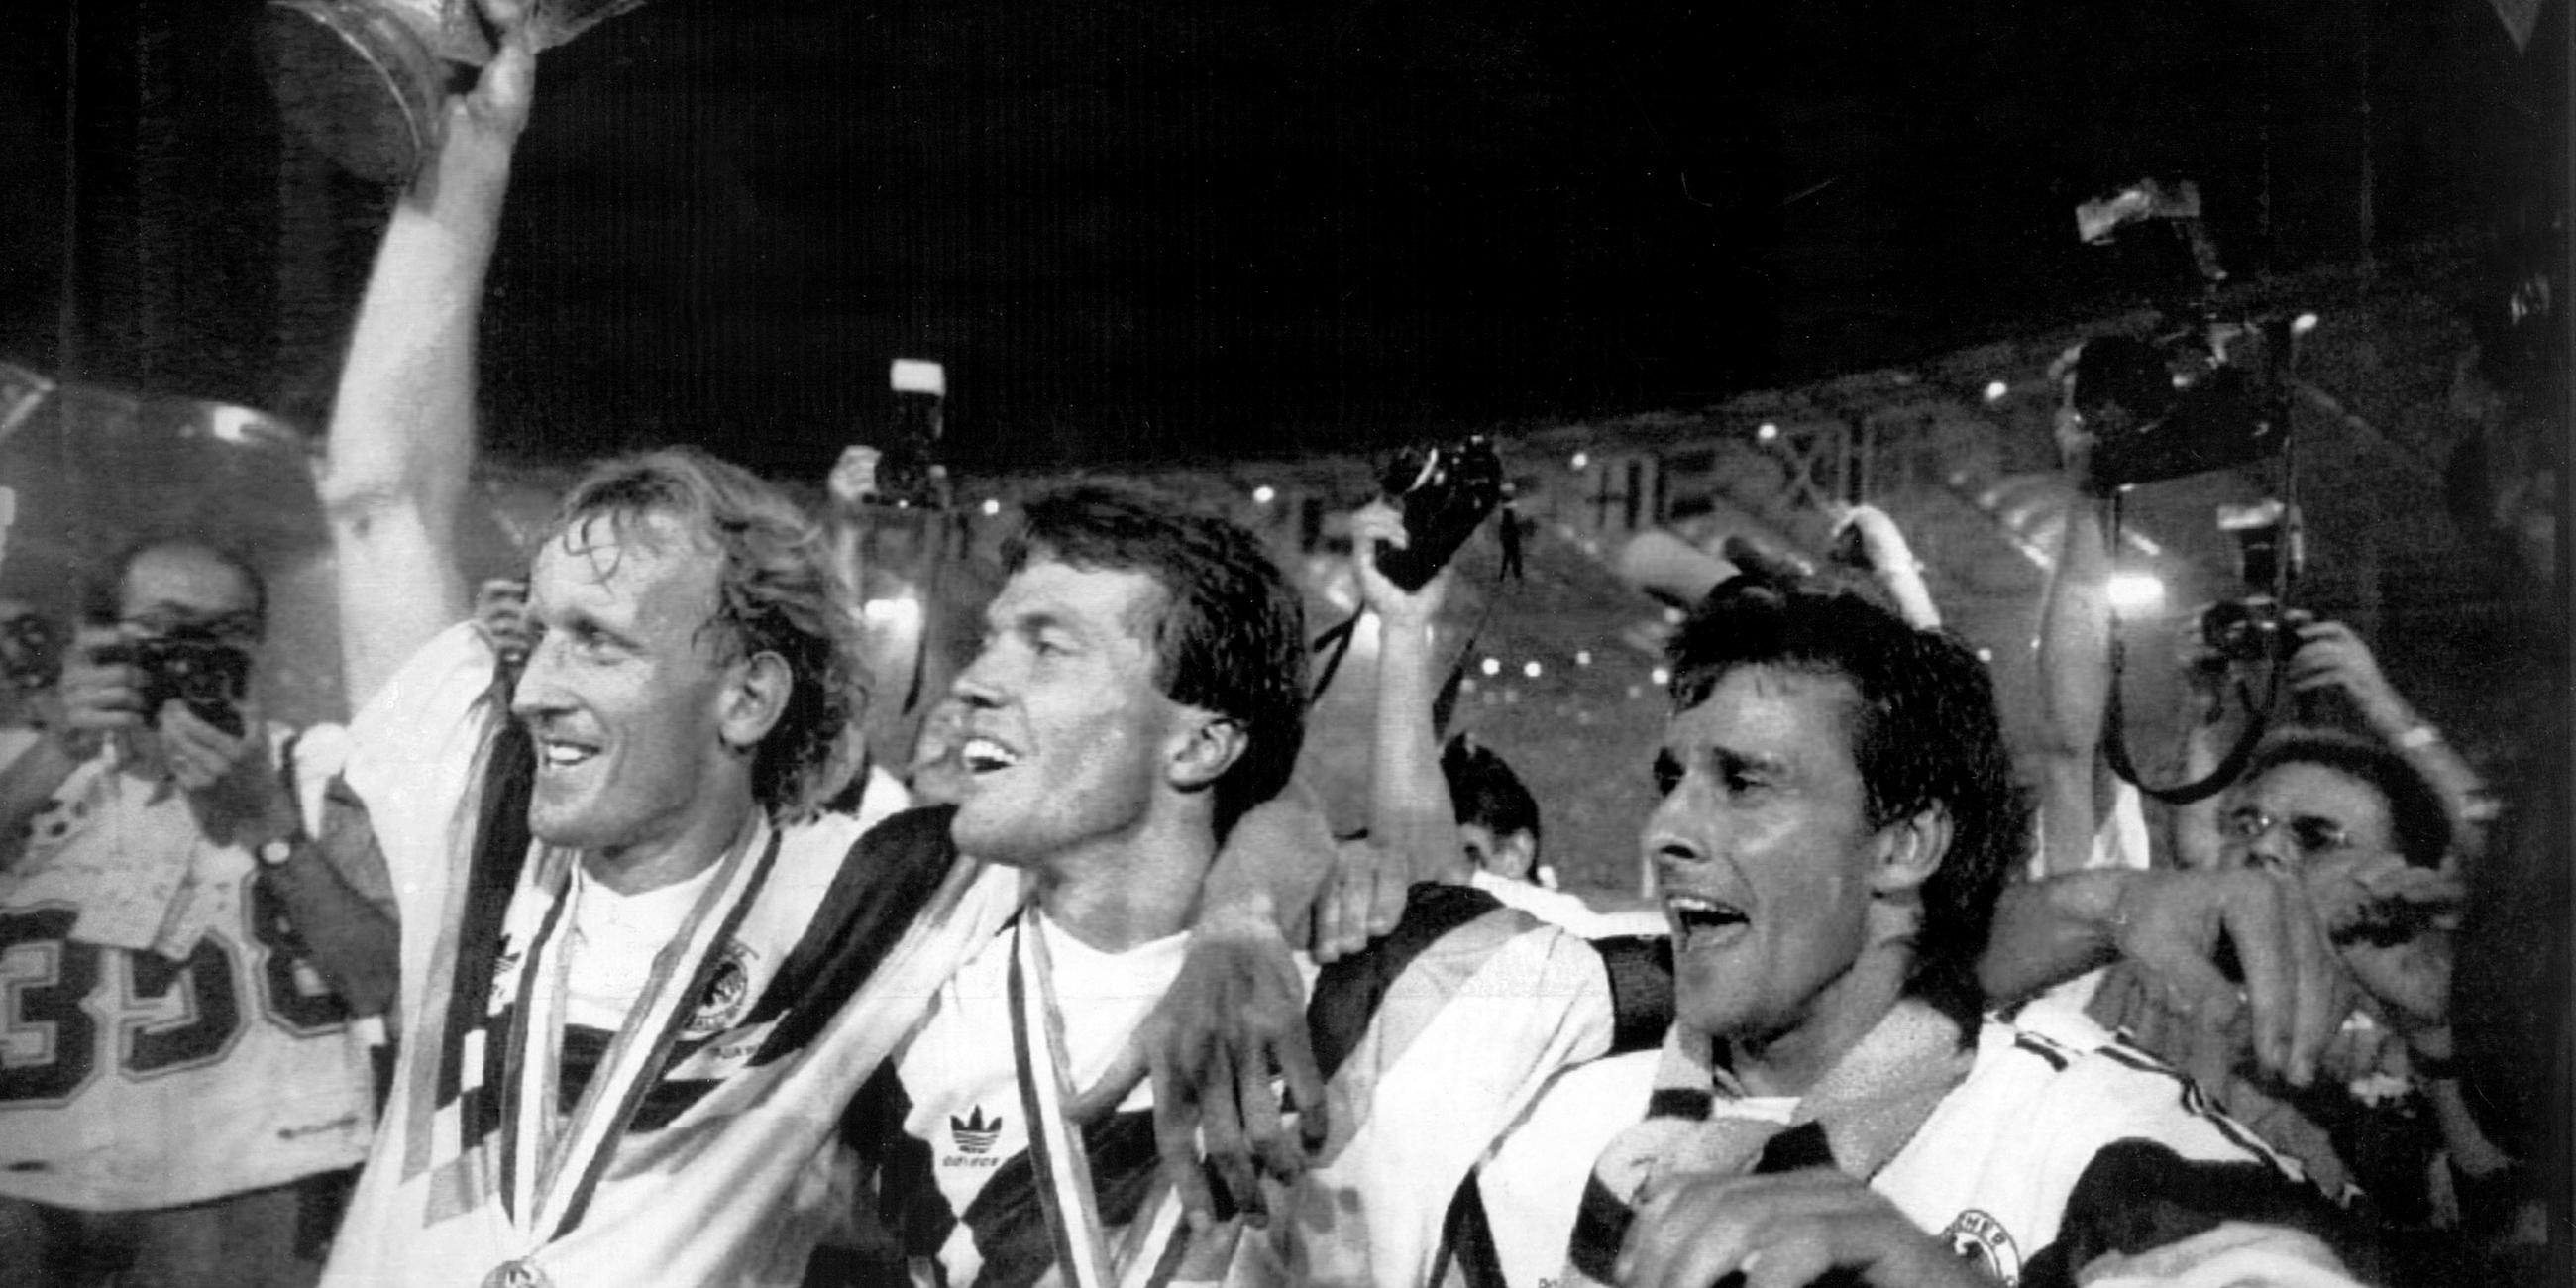 08.07.1990, Italien, Rom: Die damaligen deutschen Nationalspieler Andreas Brehme (l-r), mit dem WM-Pokal in der Hand, Lothar Matthäus und Pierre Littbarski bejubeln den Erfolg im Olympiastadion in Rom.